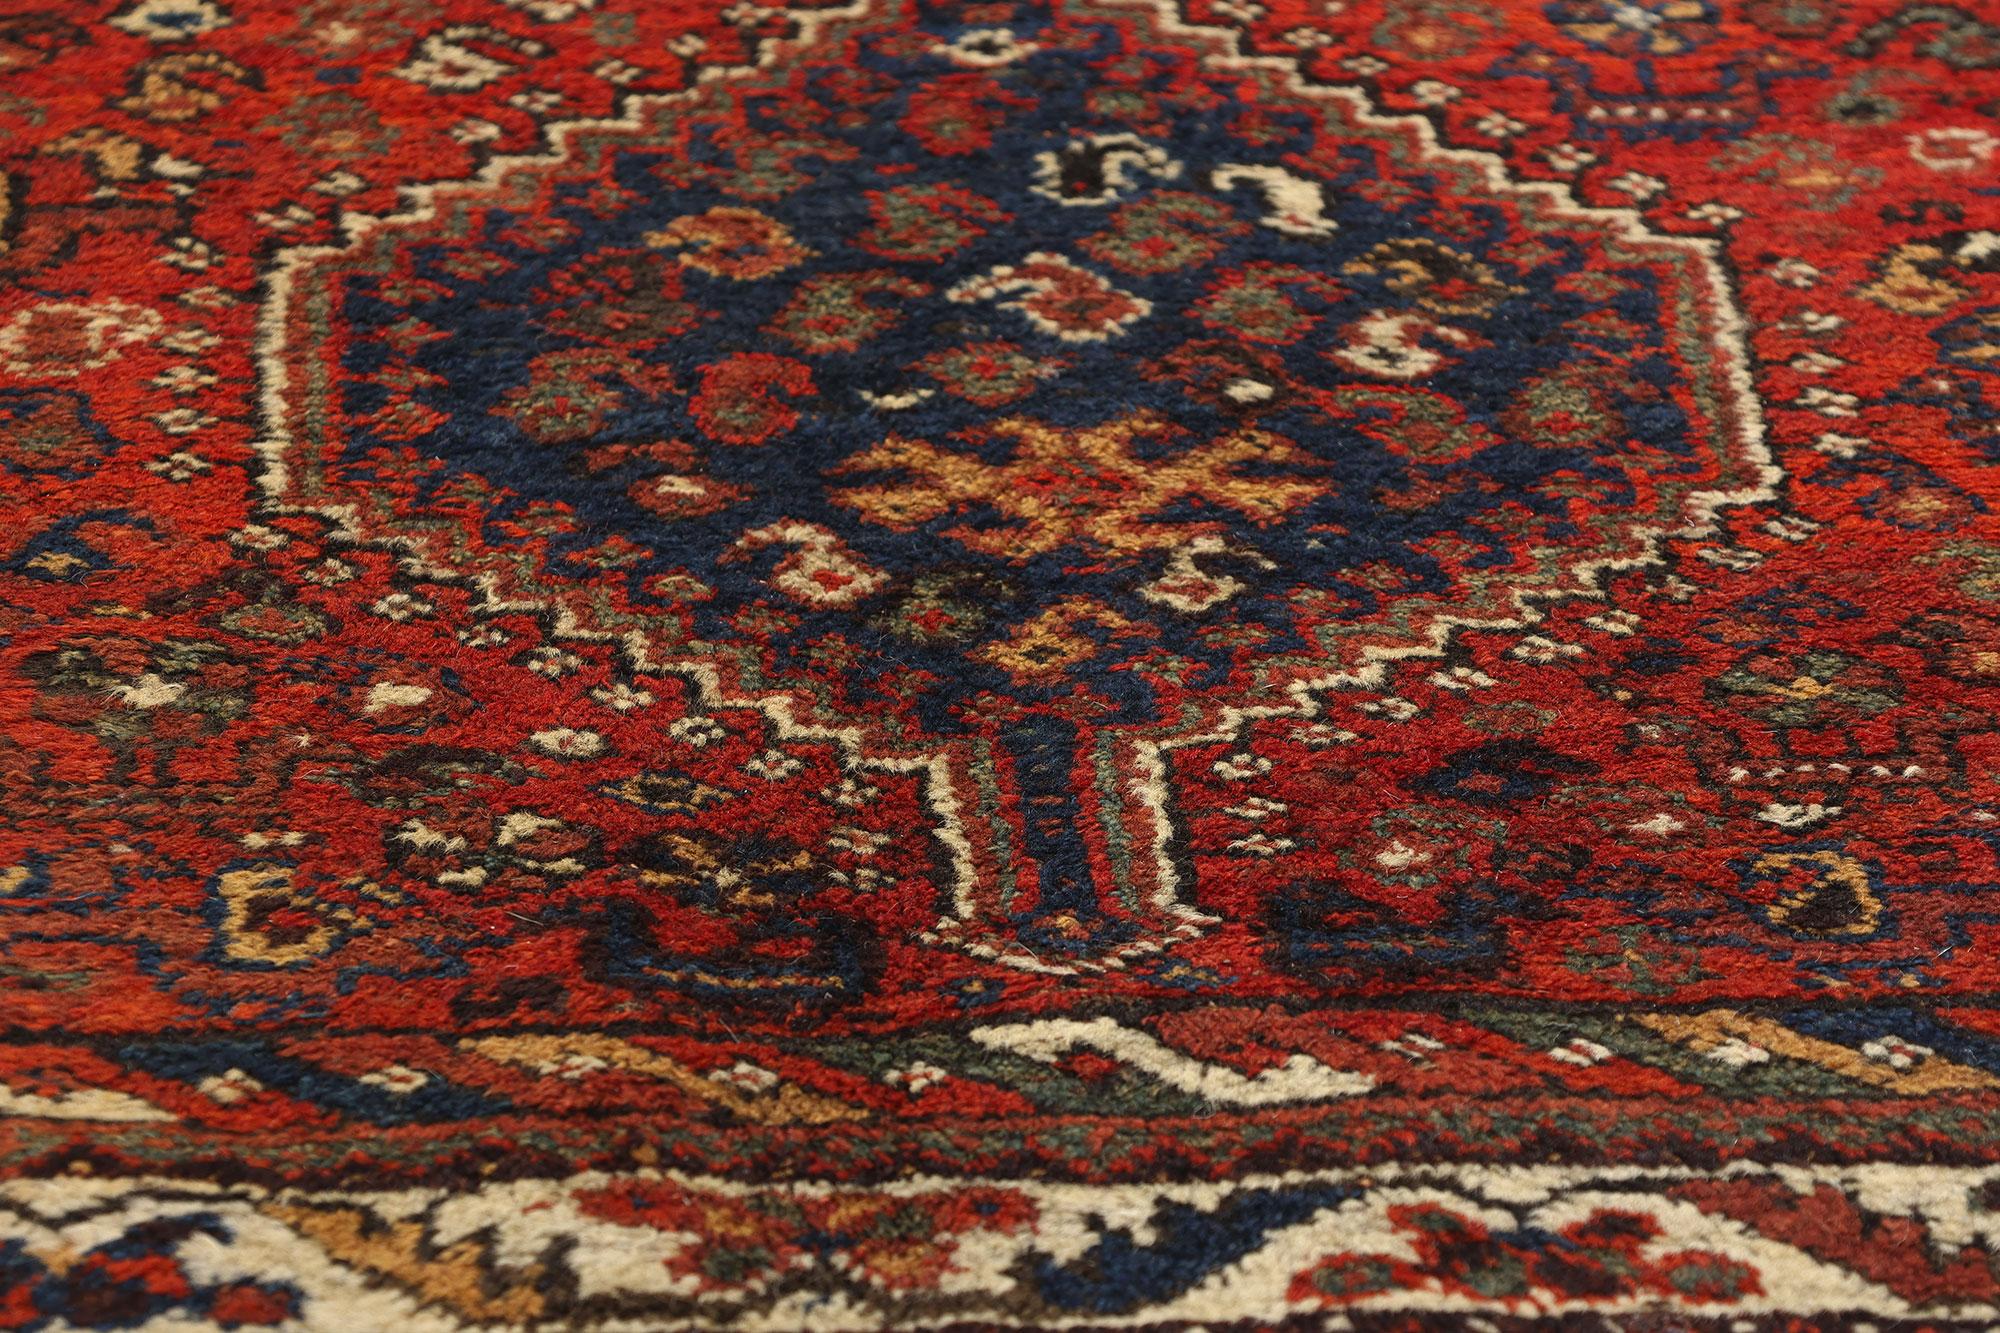 Late 19th Century Antique Persian Shiraz Carpet In Good Condition For Sale In Dallas, TX